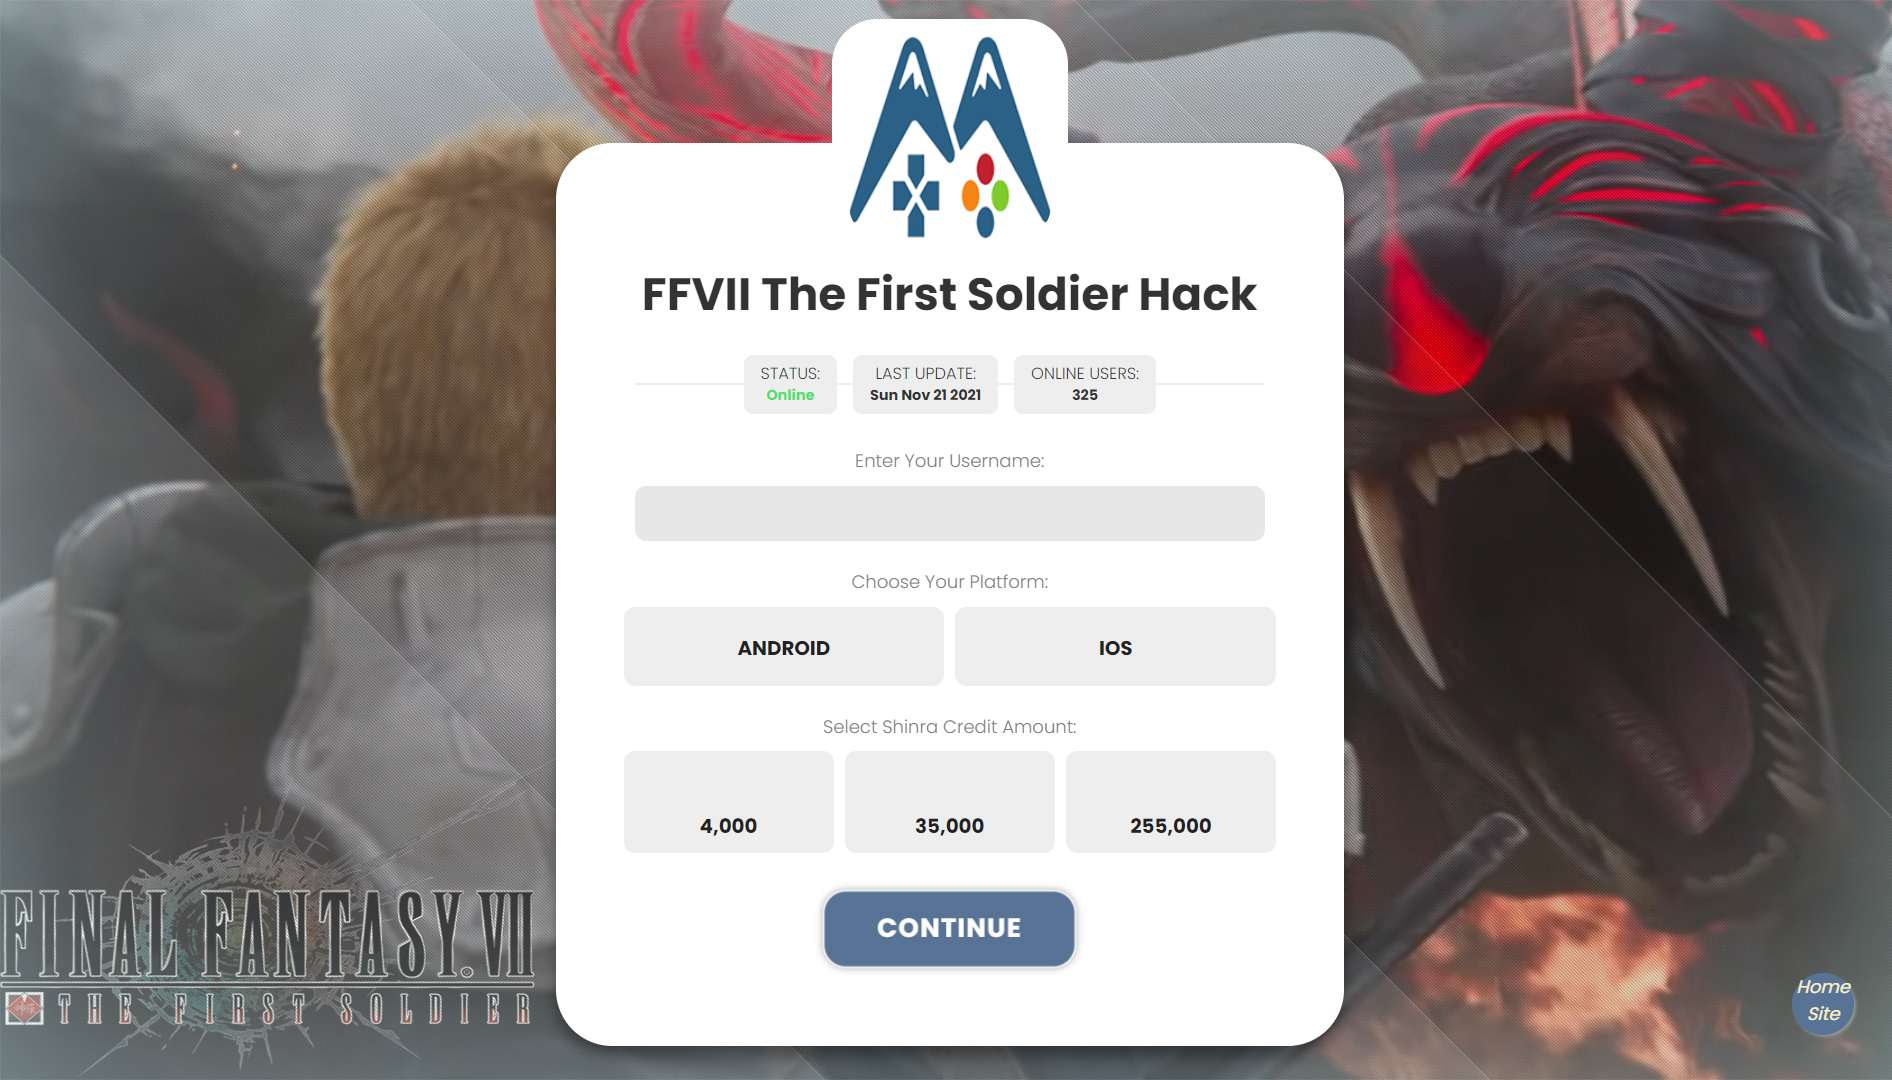 ffvii-the-first-soldier-hack.jpg